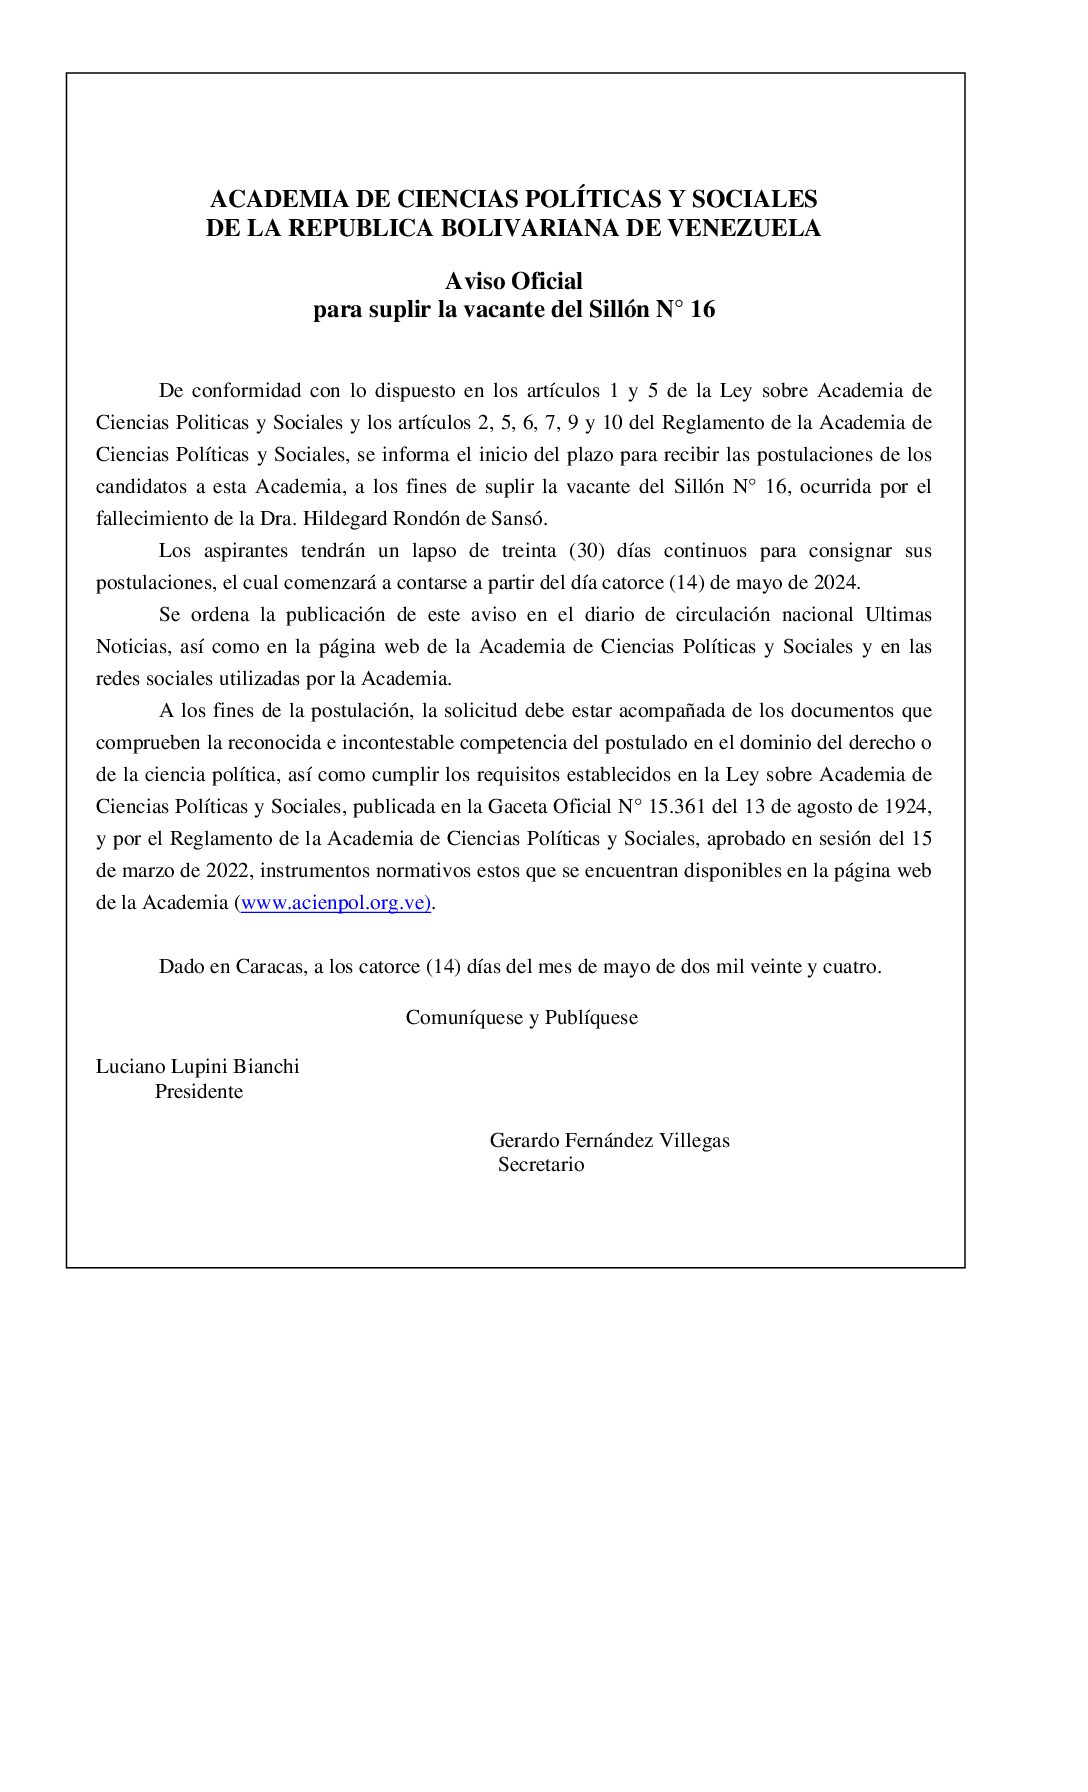 Aviso Oficial para llenar la vacante del Sillón N° 16, ocurrida por el fallecimiento de la Dra. Hildegard Rondón de Sansó